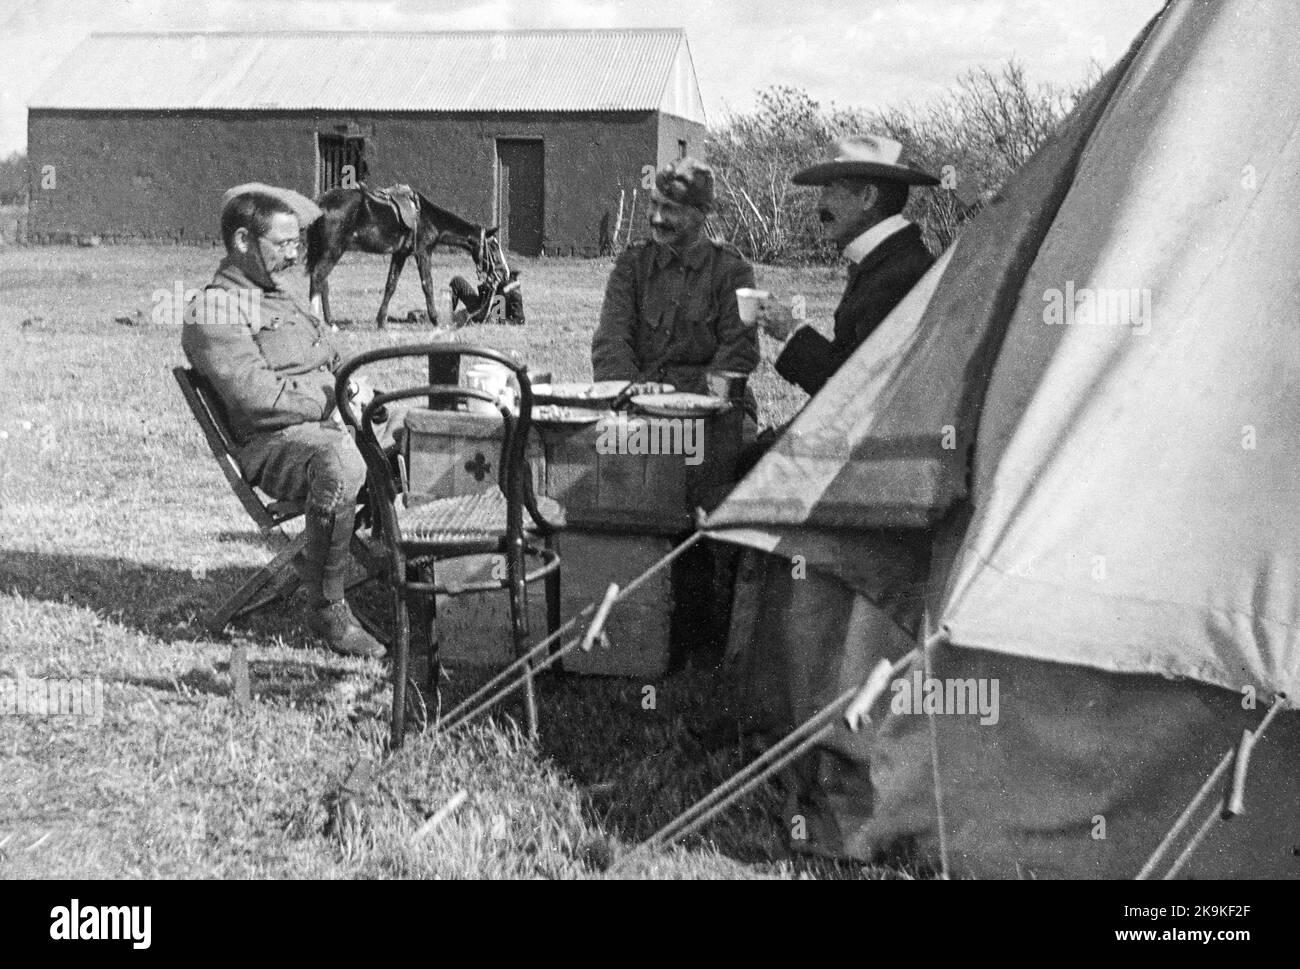 Boer War Fotografía que muestra soldados y otro hombre relajándose fuera de una tienda, durante la guerra. Foto de stock